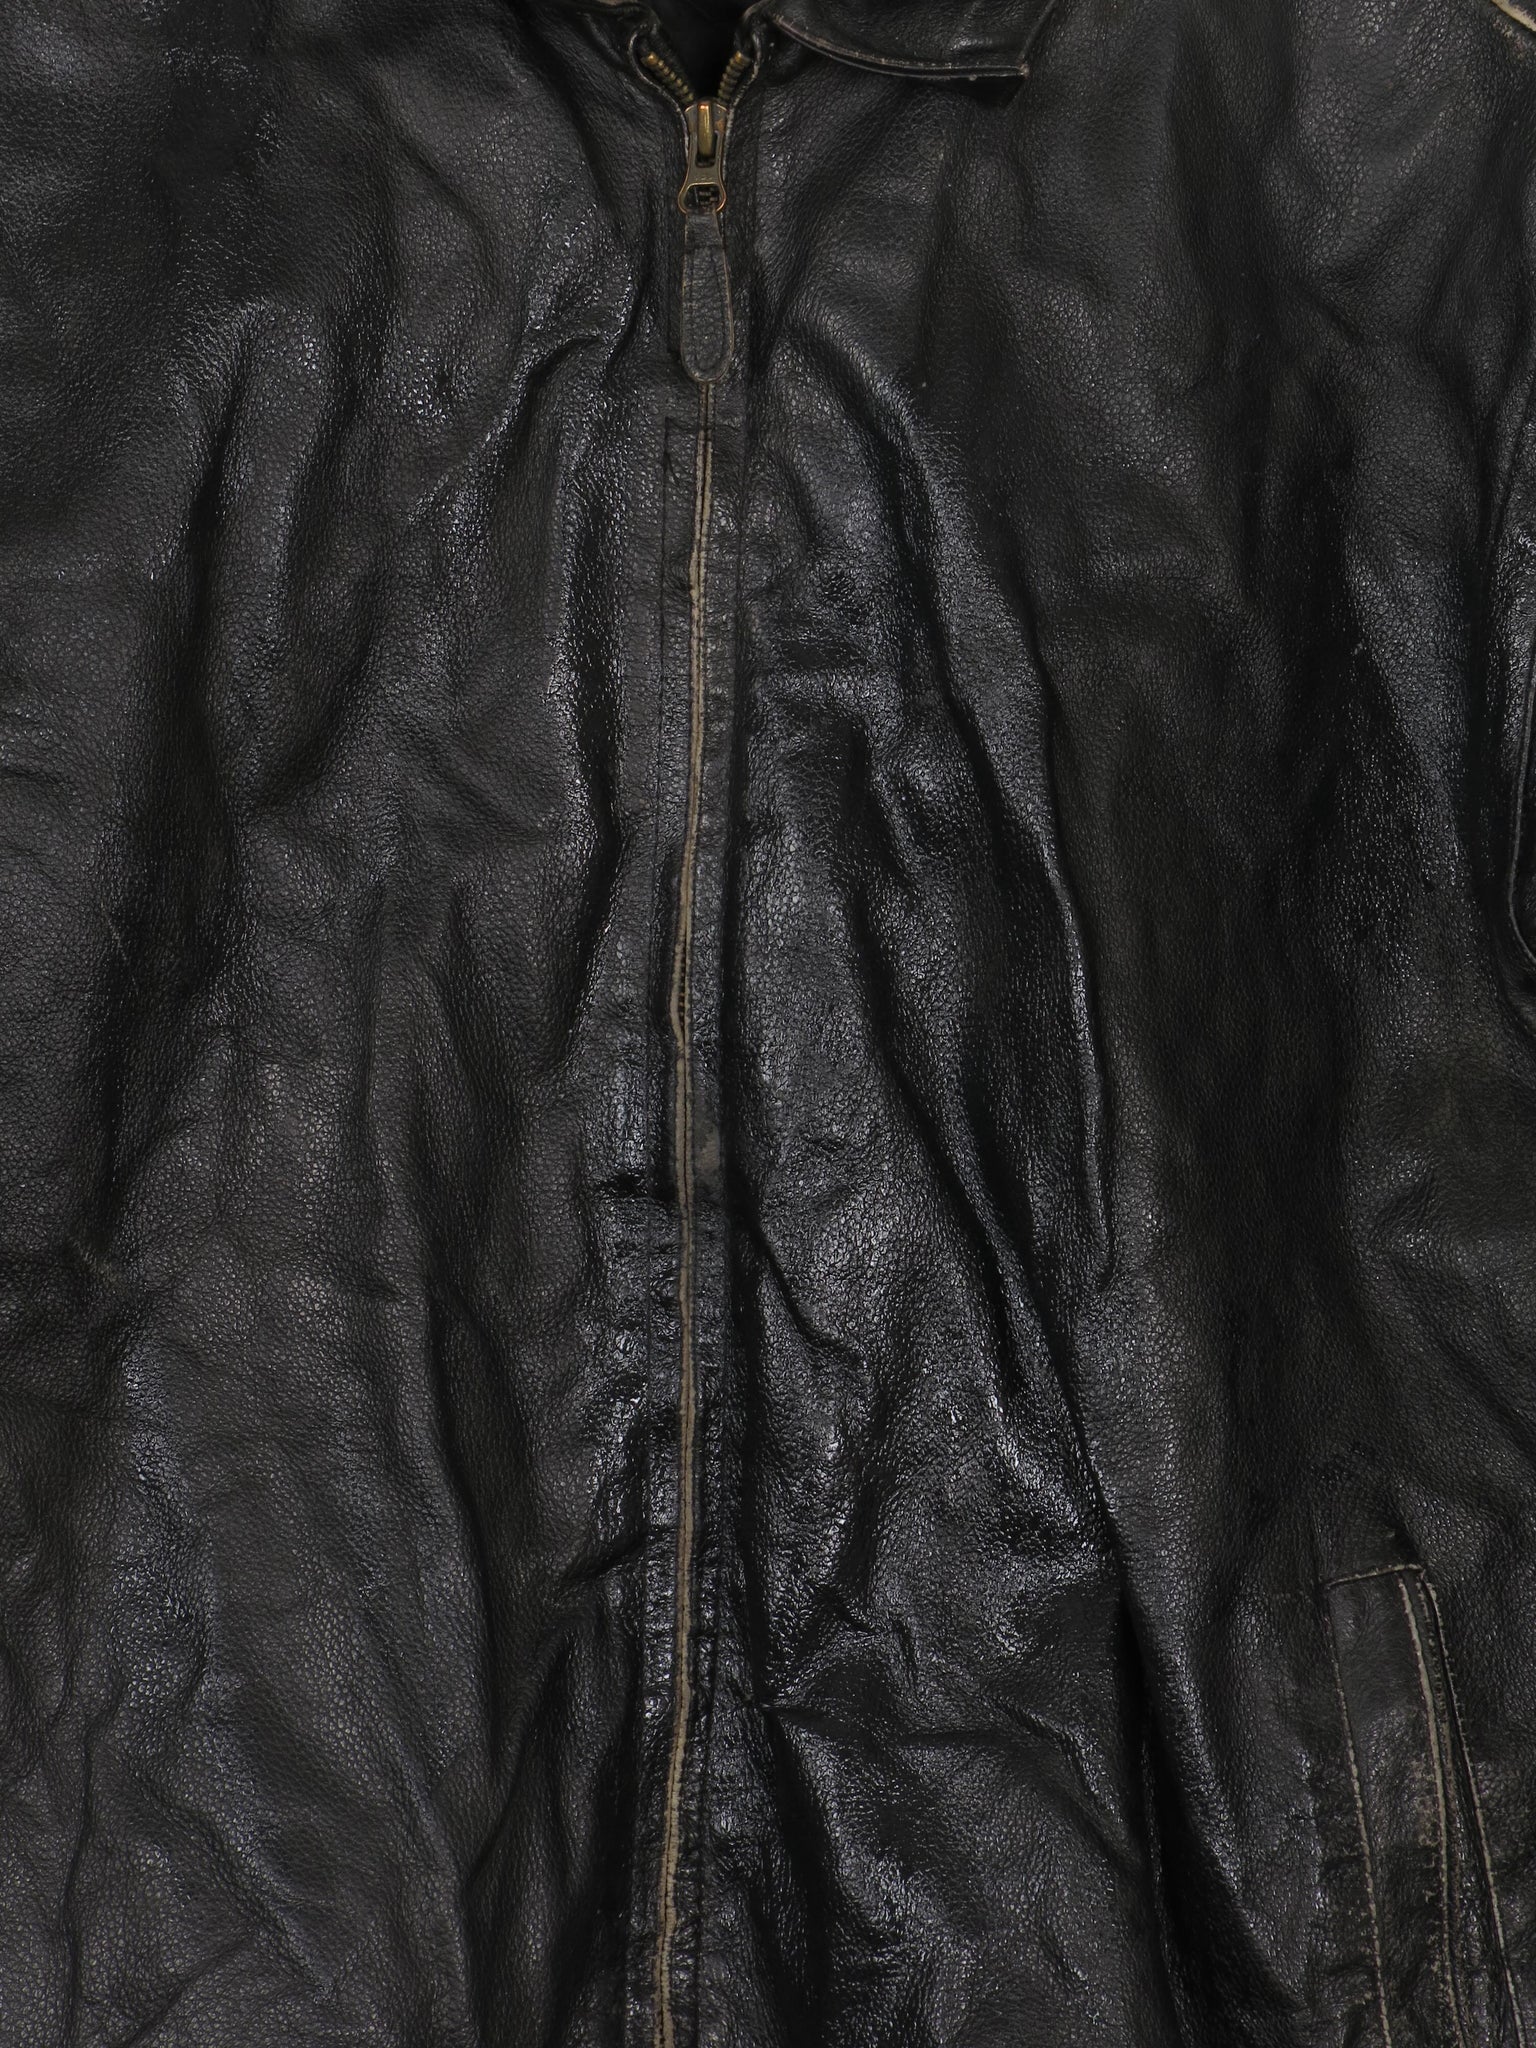 Men's Vintage Black Leather Bomber Jacket Distressed M/L - The Harlequin